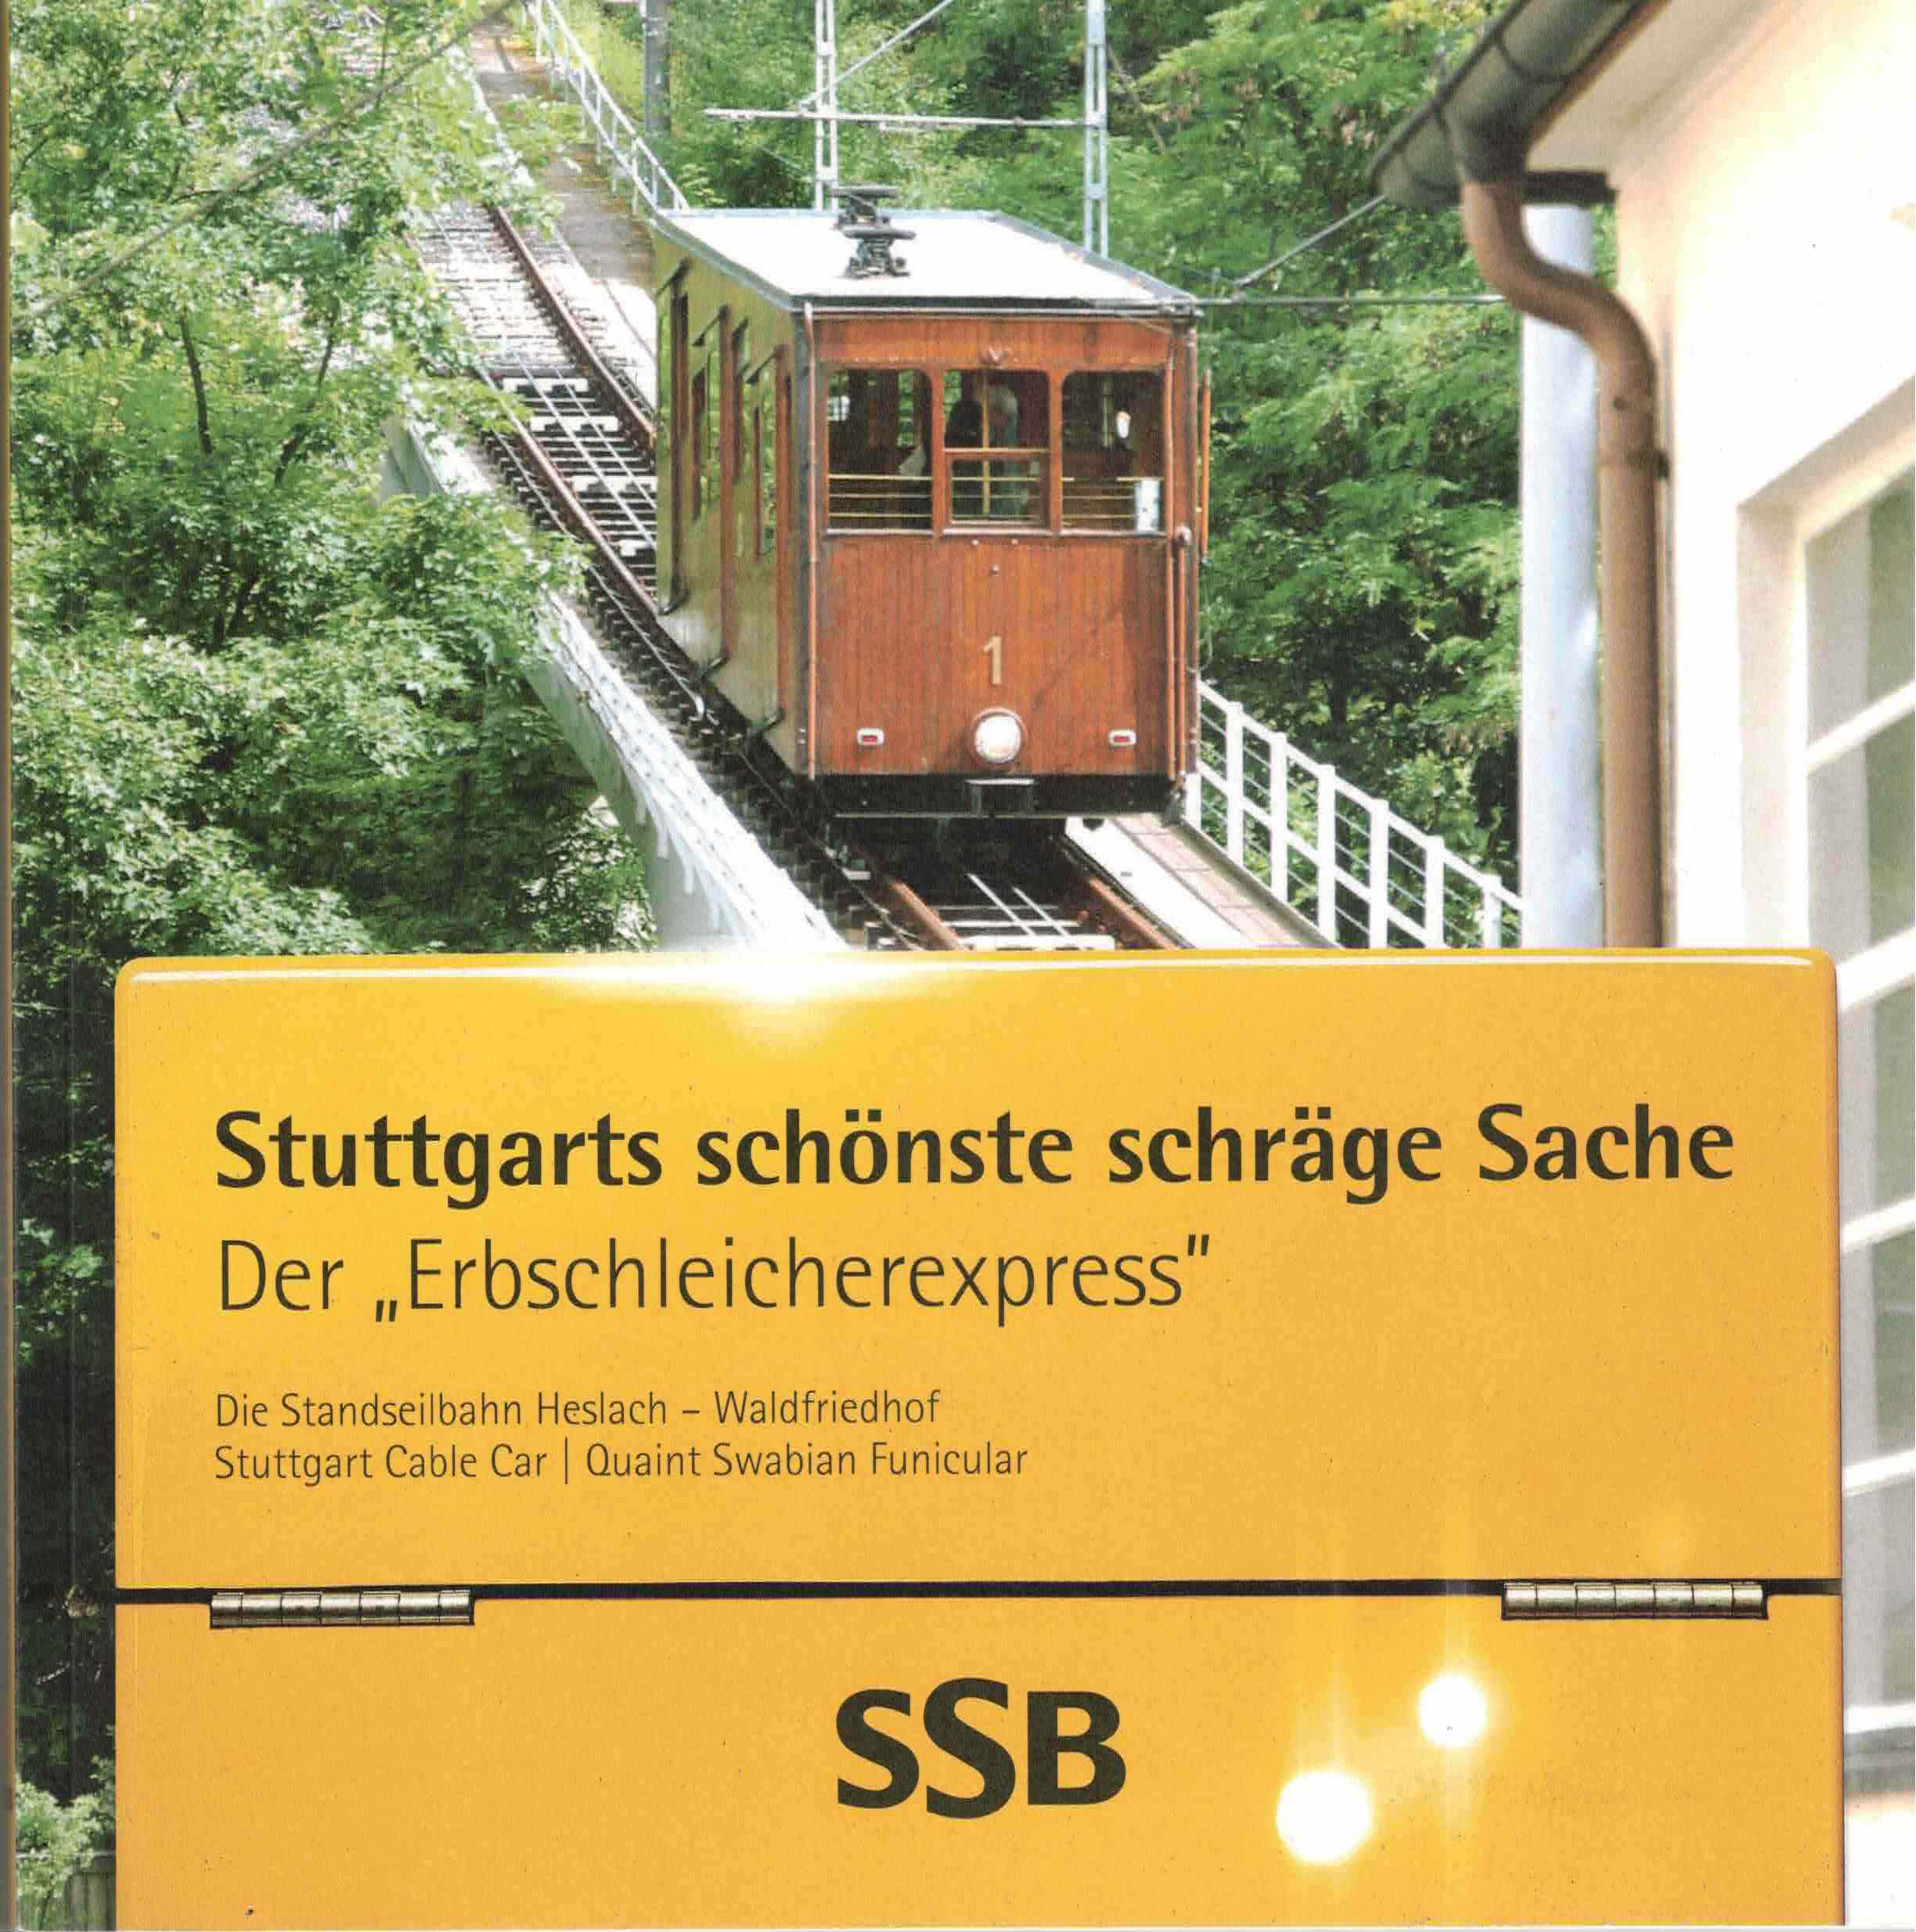 Featured image for “April 2022 – Stuttgarts schönste schräge Sache”